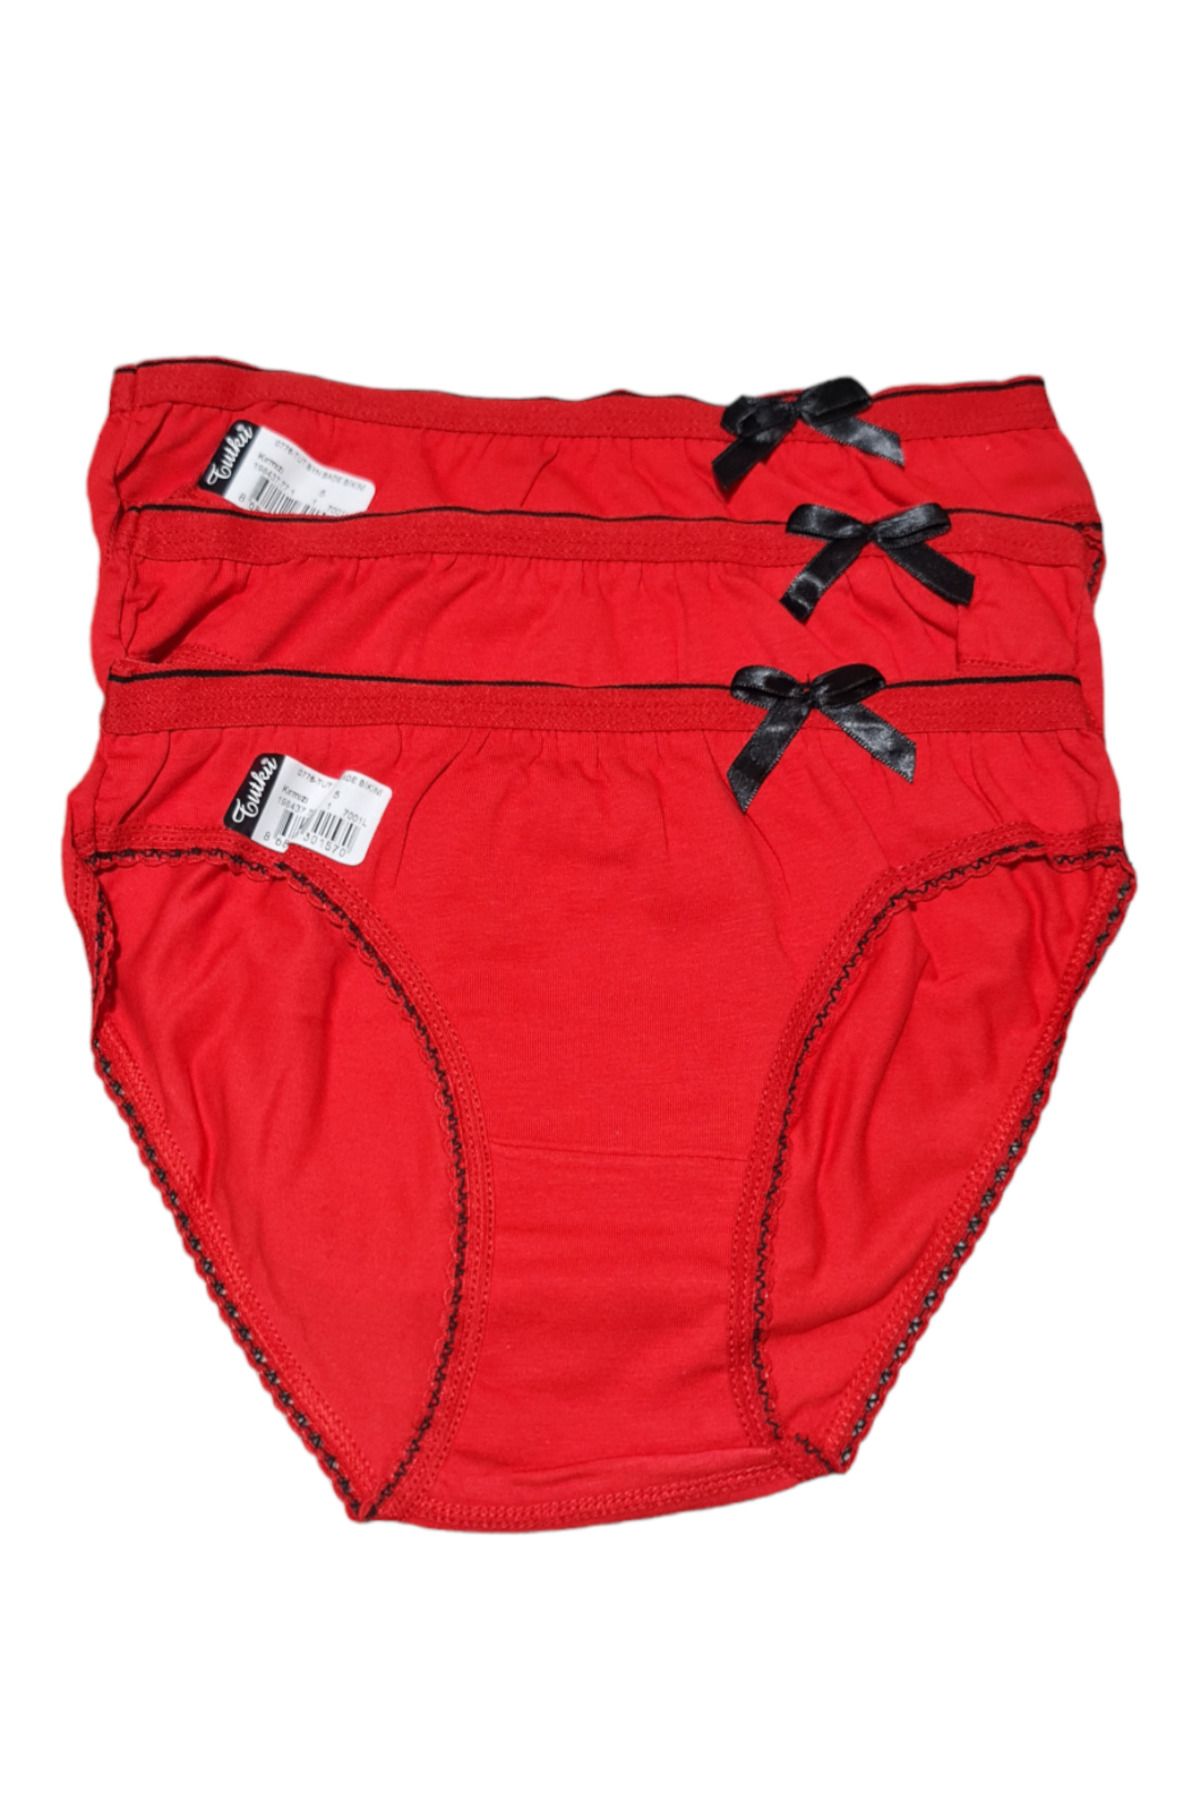 Tutku Kadın 3'lü Paket Kırmızı Bade Bikini Külot